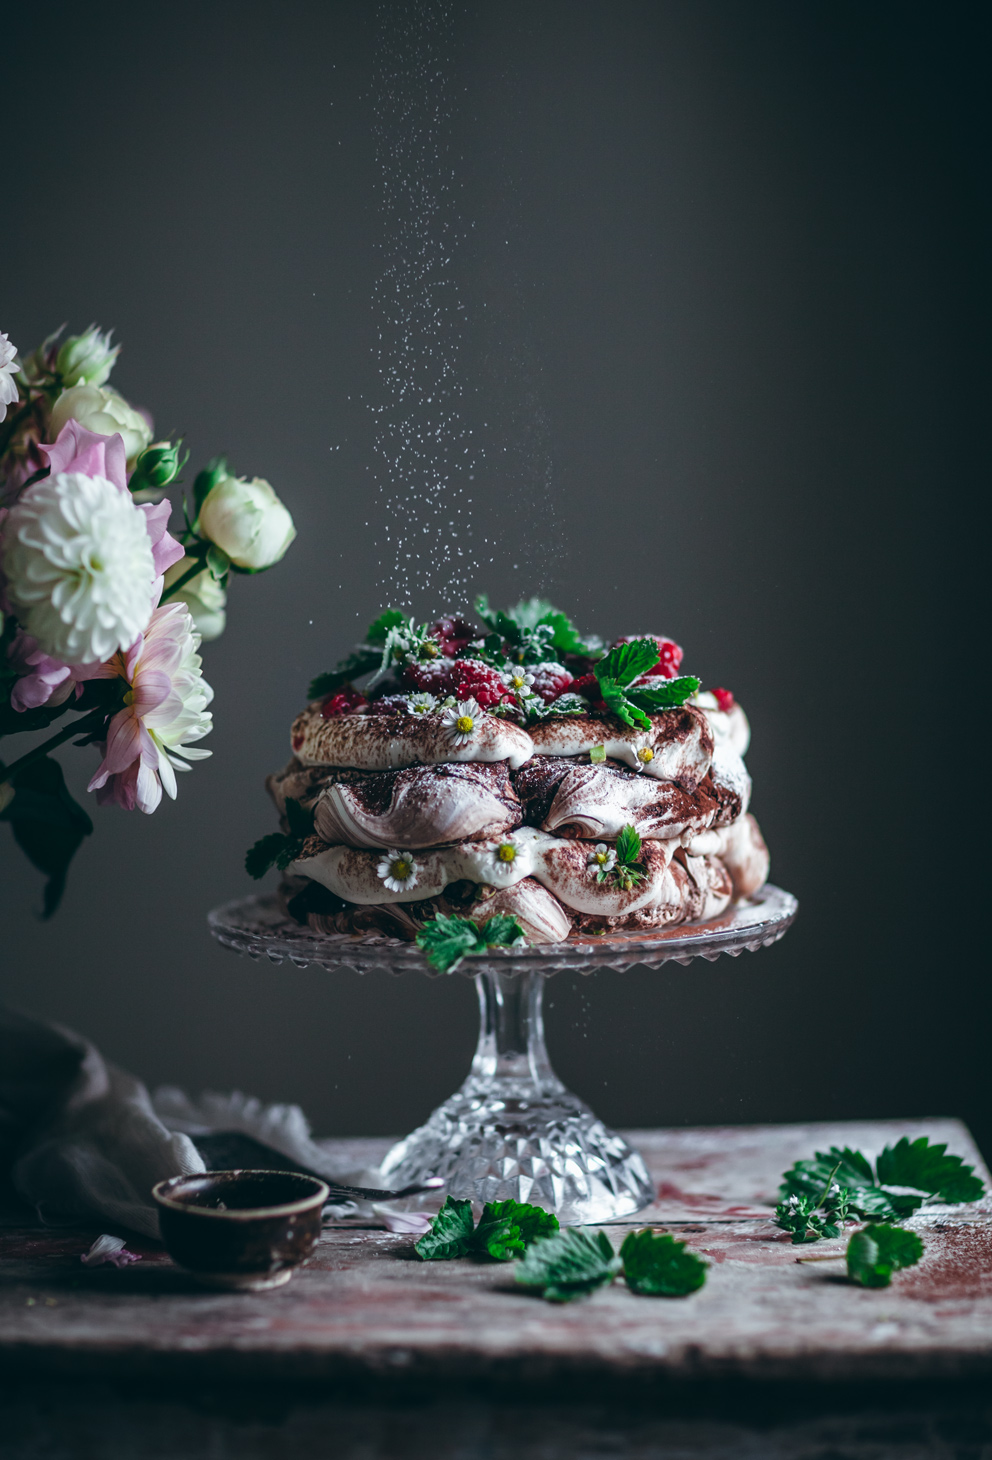 Chocolate Swirl Pavlova with Whipped Cream and Raspberries 7